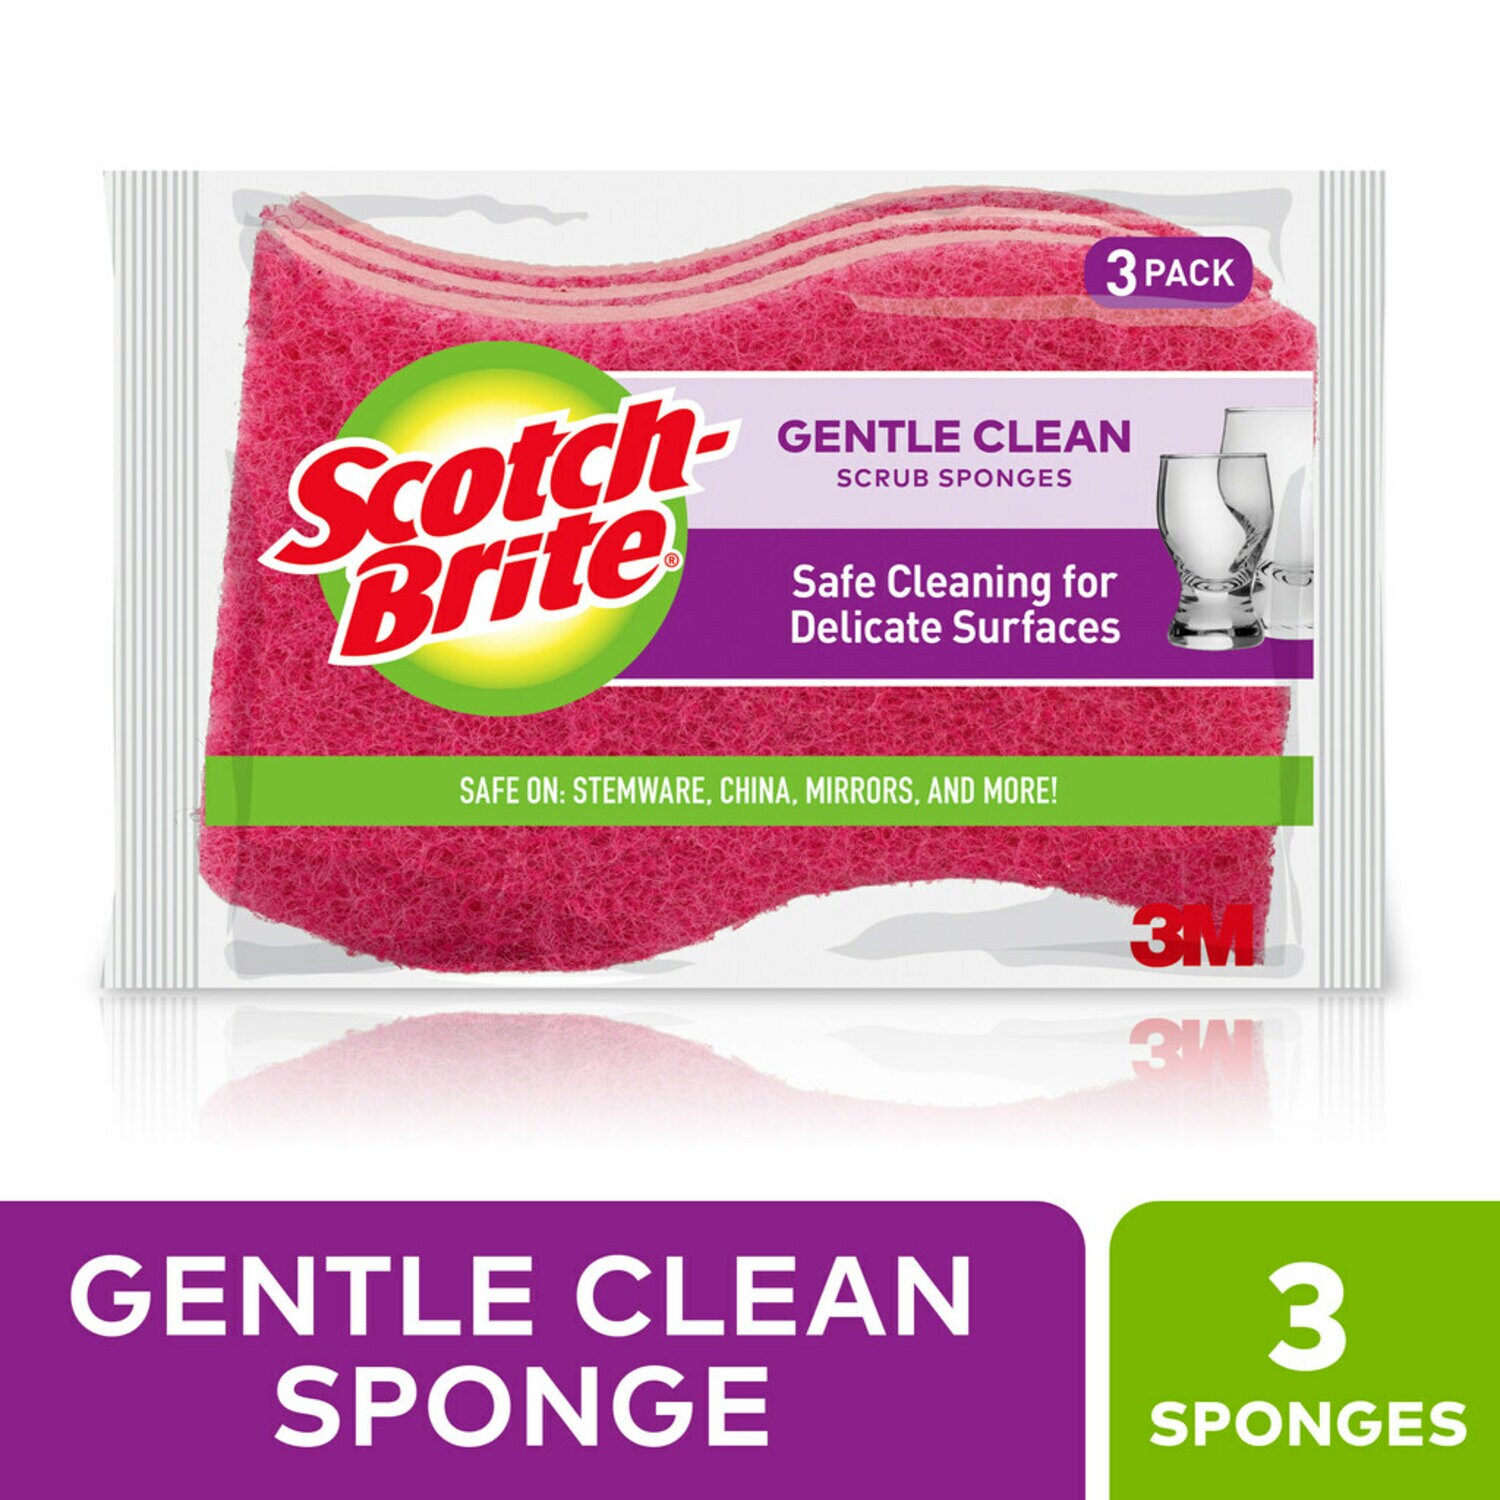 7100282642 - Scotch-Brite Gentle Clean Scrub Sponge DD-3-8, 4.4 in x 2.6 in x 0.7 in (111 mm x 66 mm x 17 mm), 8/3